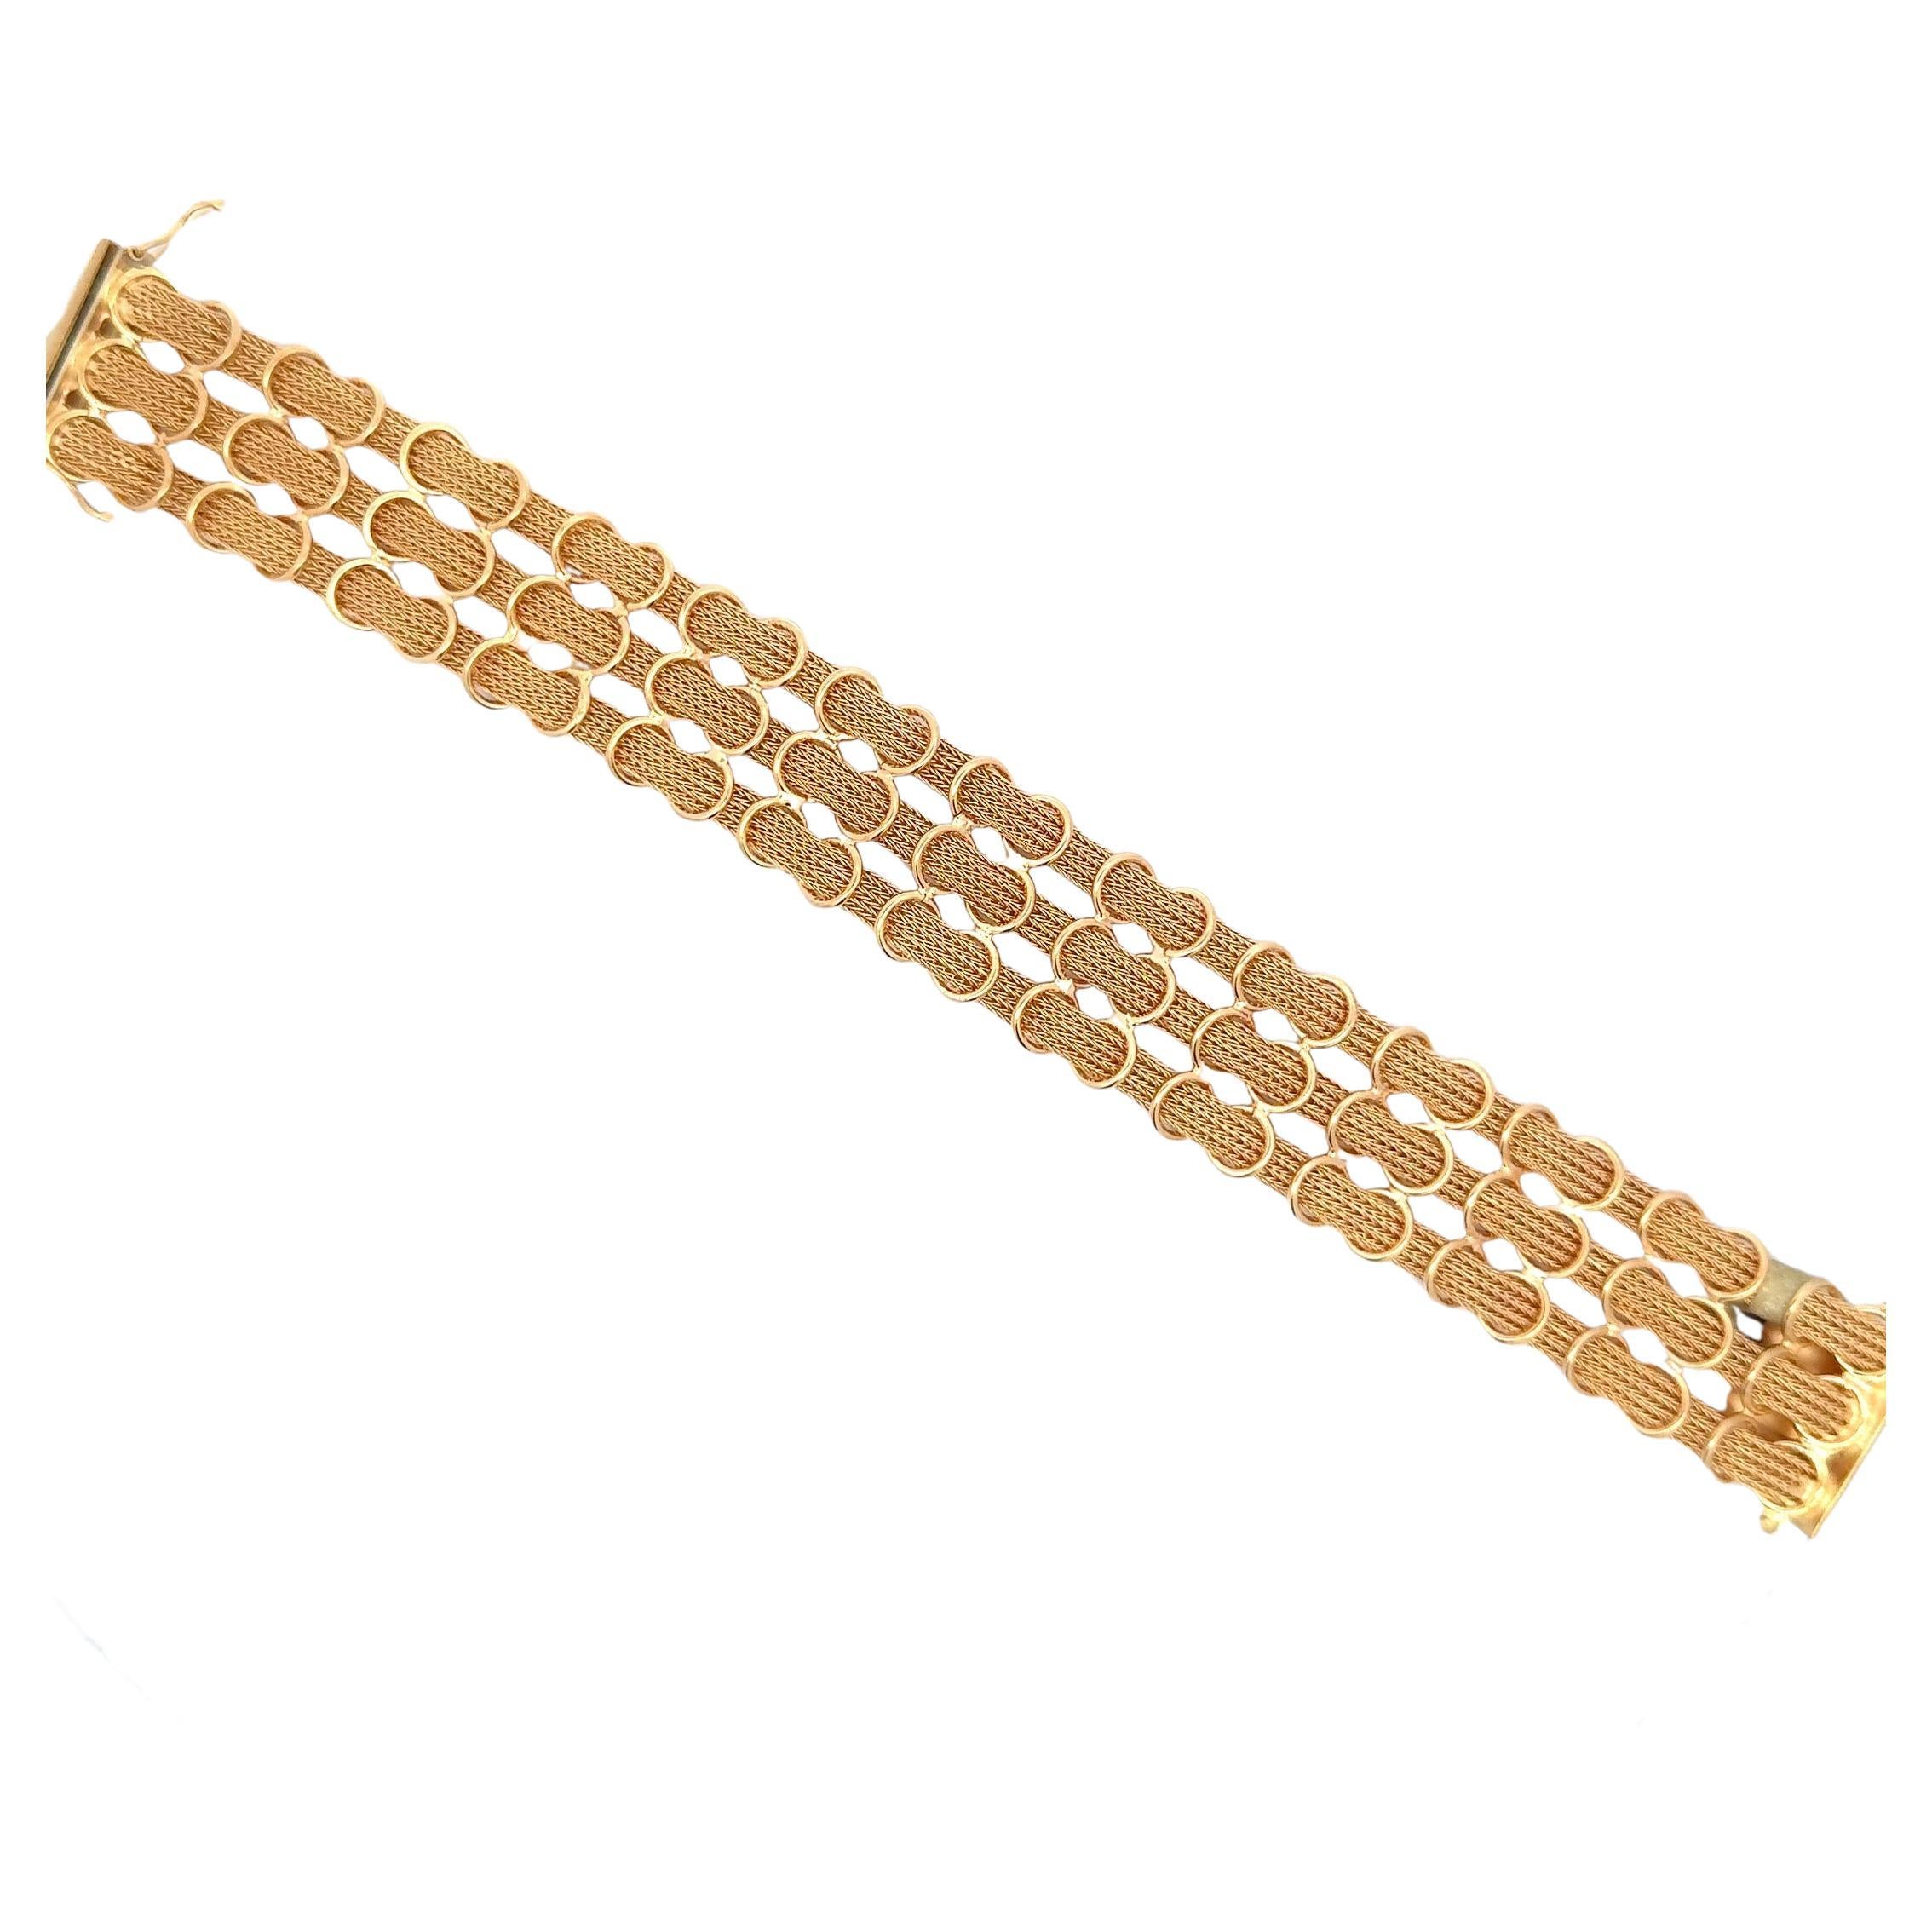 Three row woven net mesh bracelet weighing 41.2 grams in 18 karat yellow gold. 
